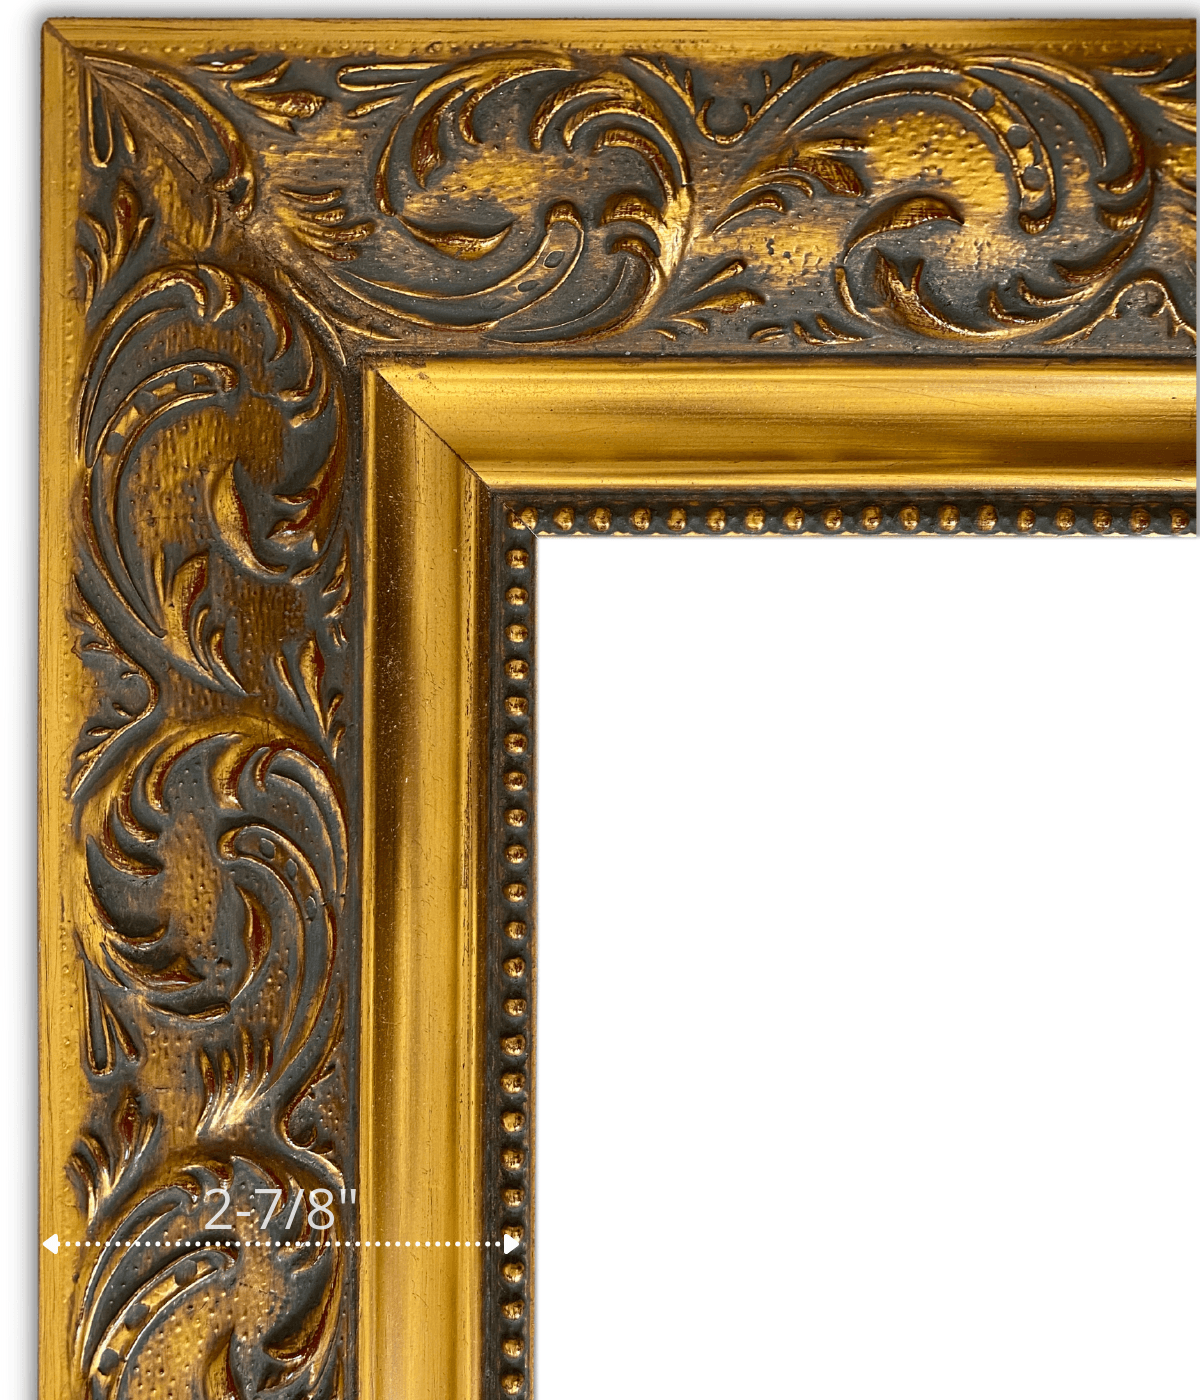 Ella Vintage Ornate Embossed Wood Picture Frame Antique Gold Patina Finish 2 7/8" Wide - West Frames